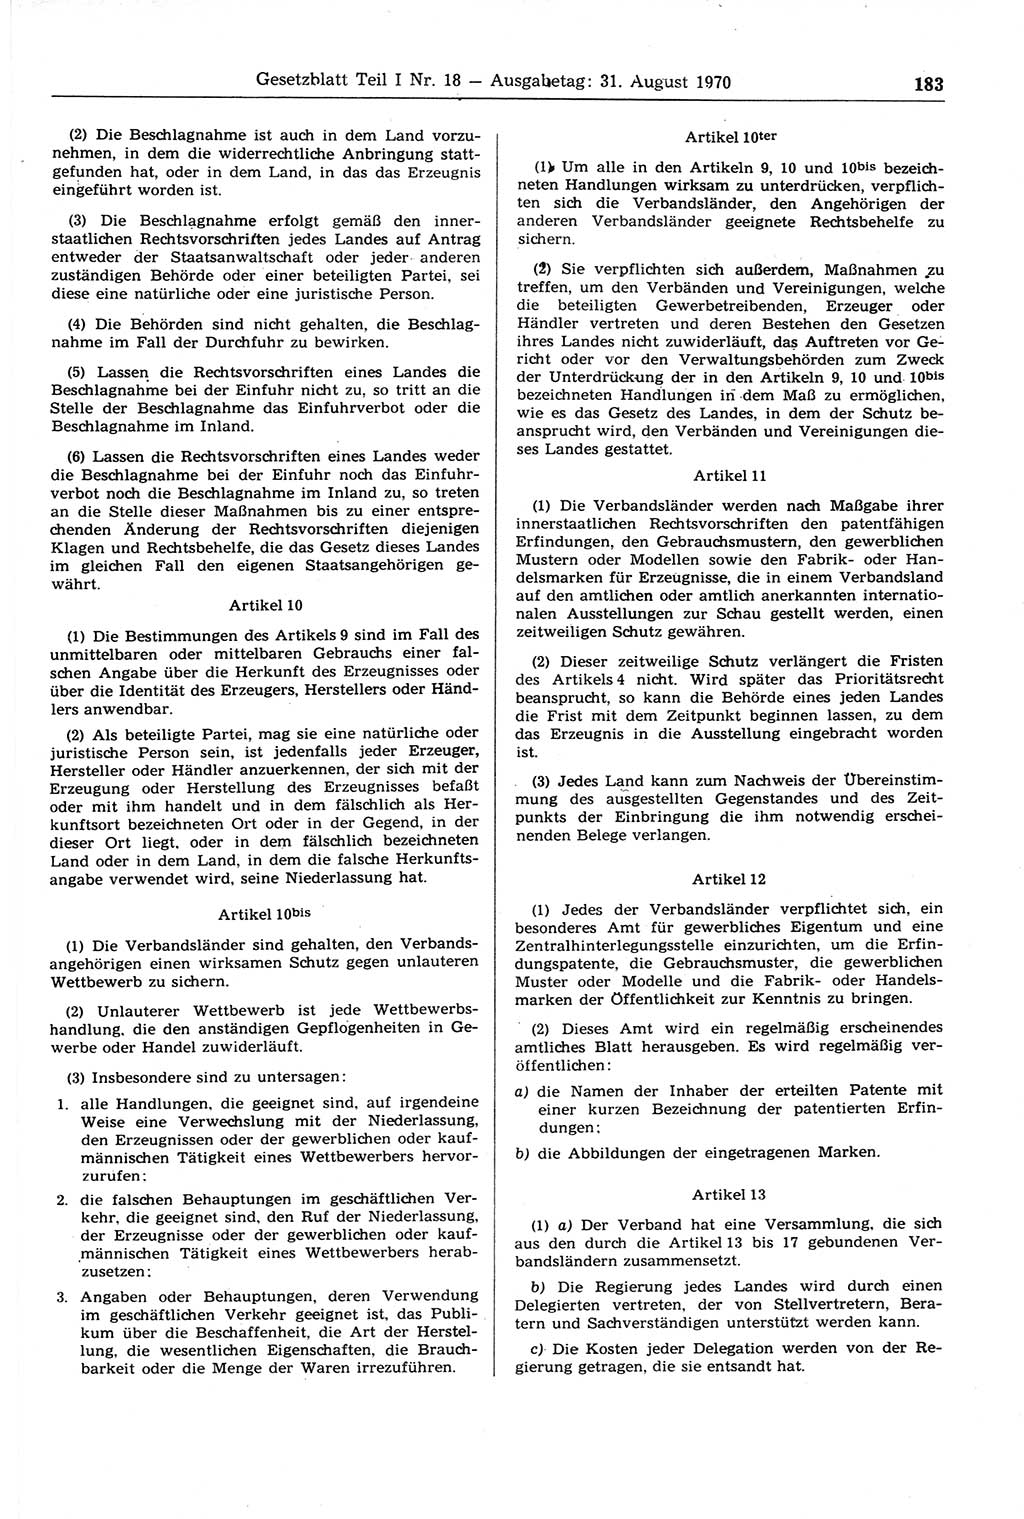 Gesetzblatt (GBl.) der Deutschen Demokratischen Republik (DDR) Teil Ⅰ 1970, Seite 183 (GBl. DDR Ⅰ 1970, S. 183)